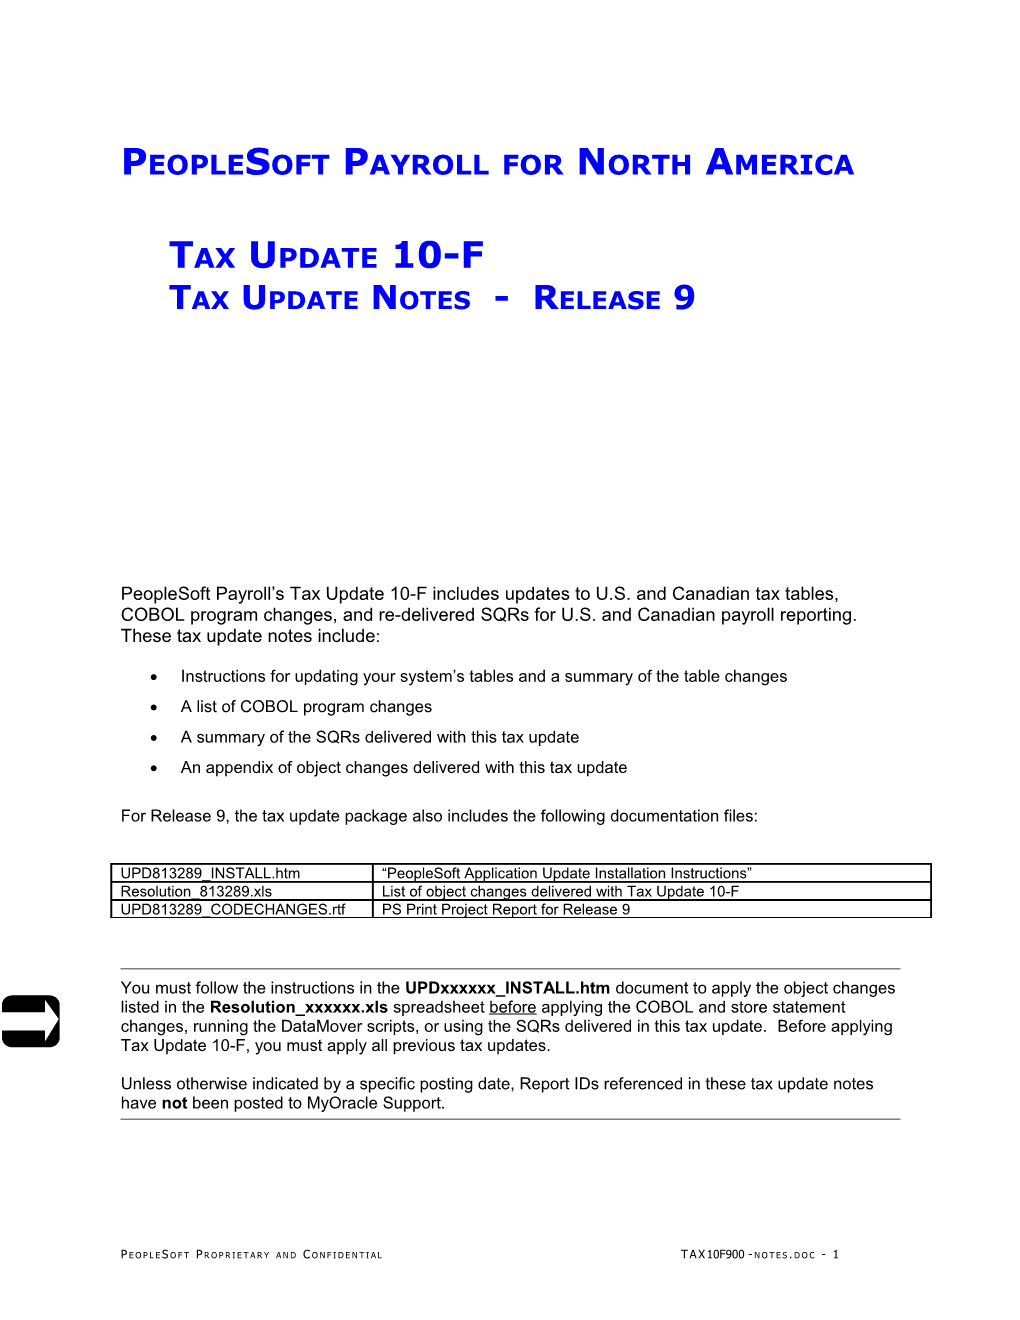 9 - Peoplesoft Payroll Tax Update 10-F